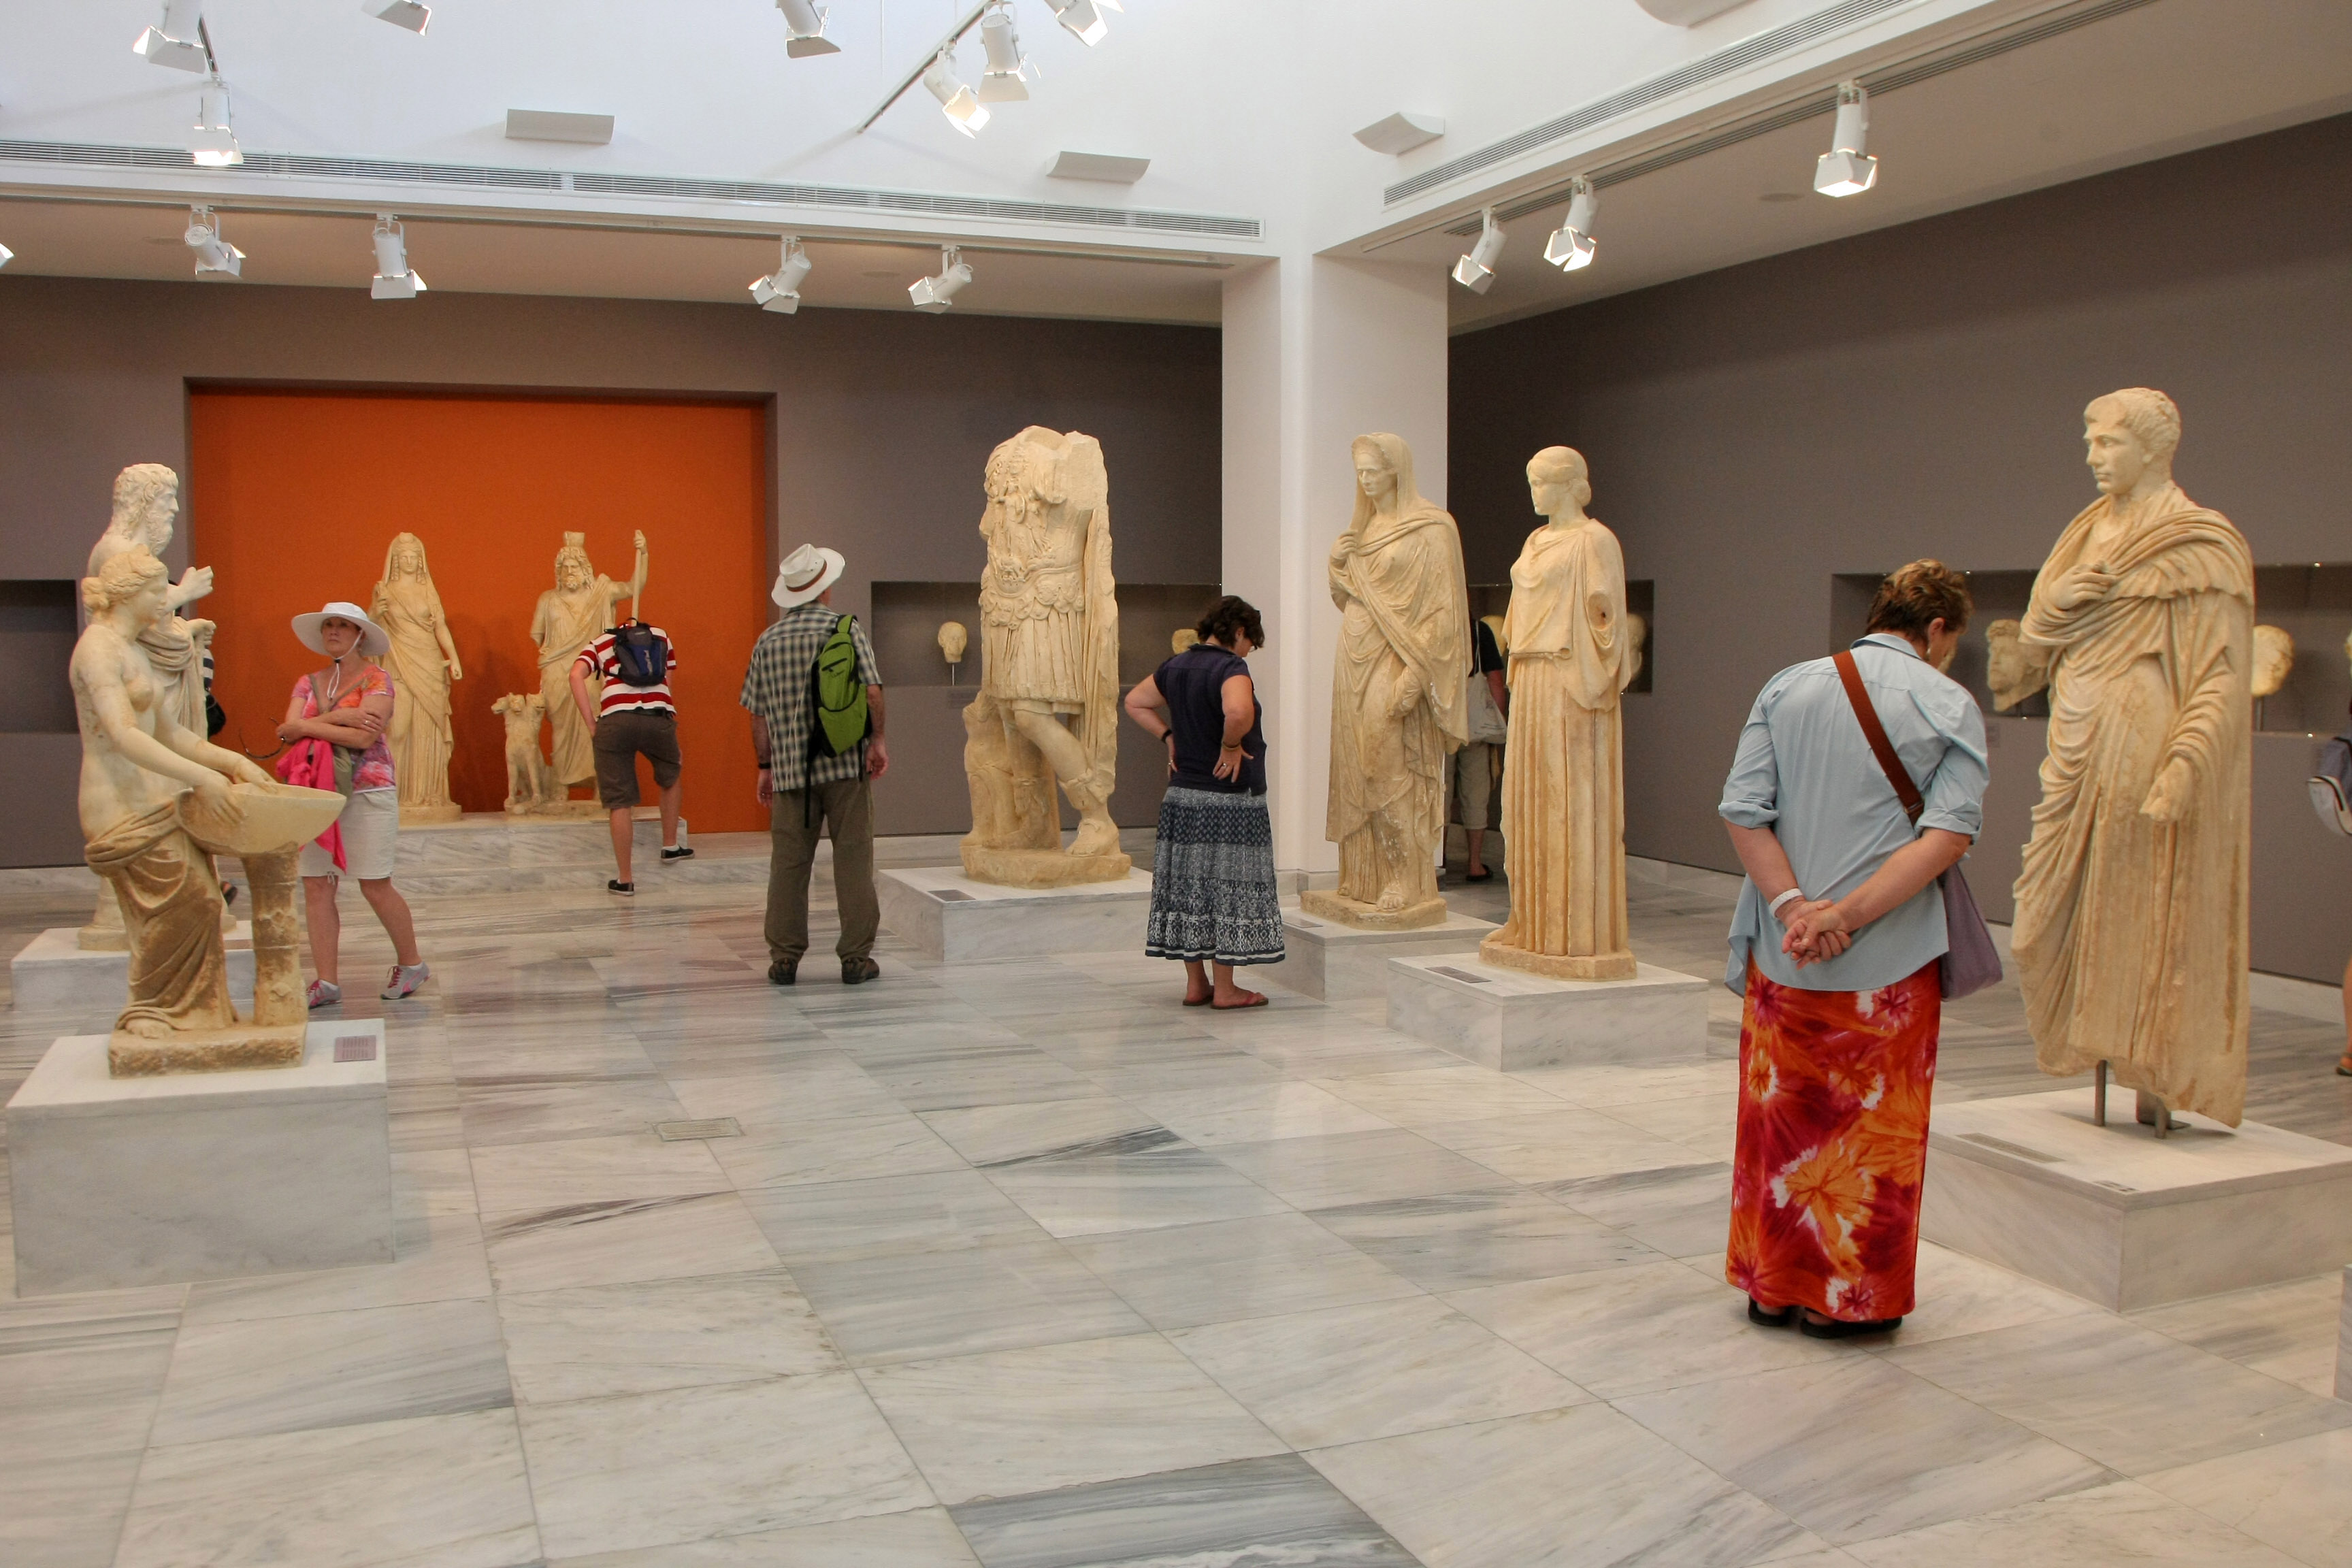 ΣΥΡΙΖΑ για ενοποίηση Αρχαιολογικού Μουσείου : Ο θησαυρός αποδείχθηκε άνθρακας